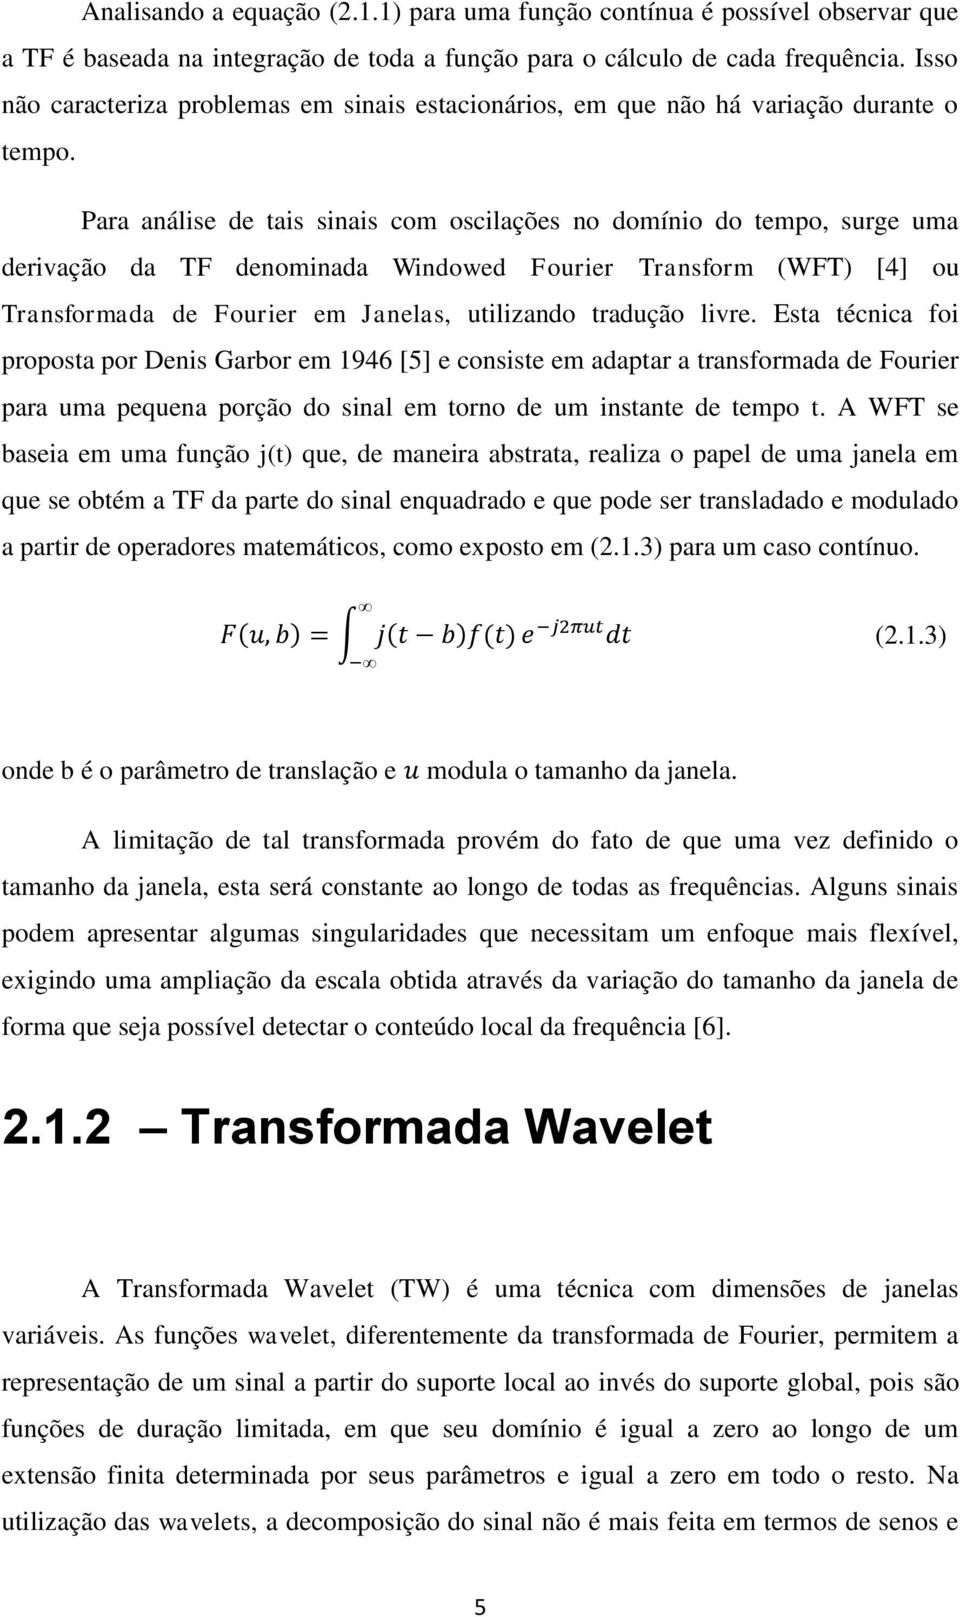 Para análise de tais sinais com oscilações no domínio do tempo, surge uma derivação da TF denominada Windowed Fourier Transform (WFT) [4] ou Transformada de Fourier em Janelas, utilizando tradução